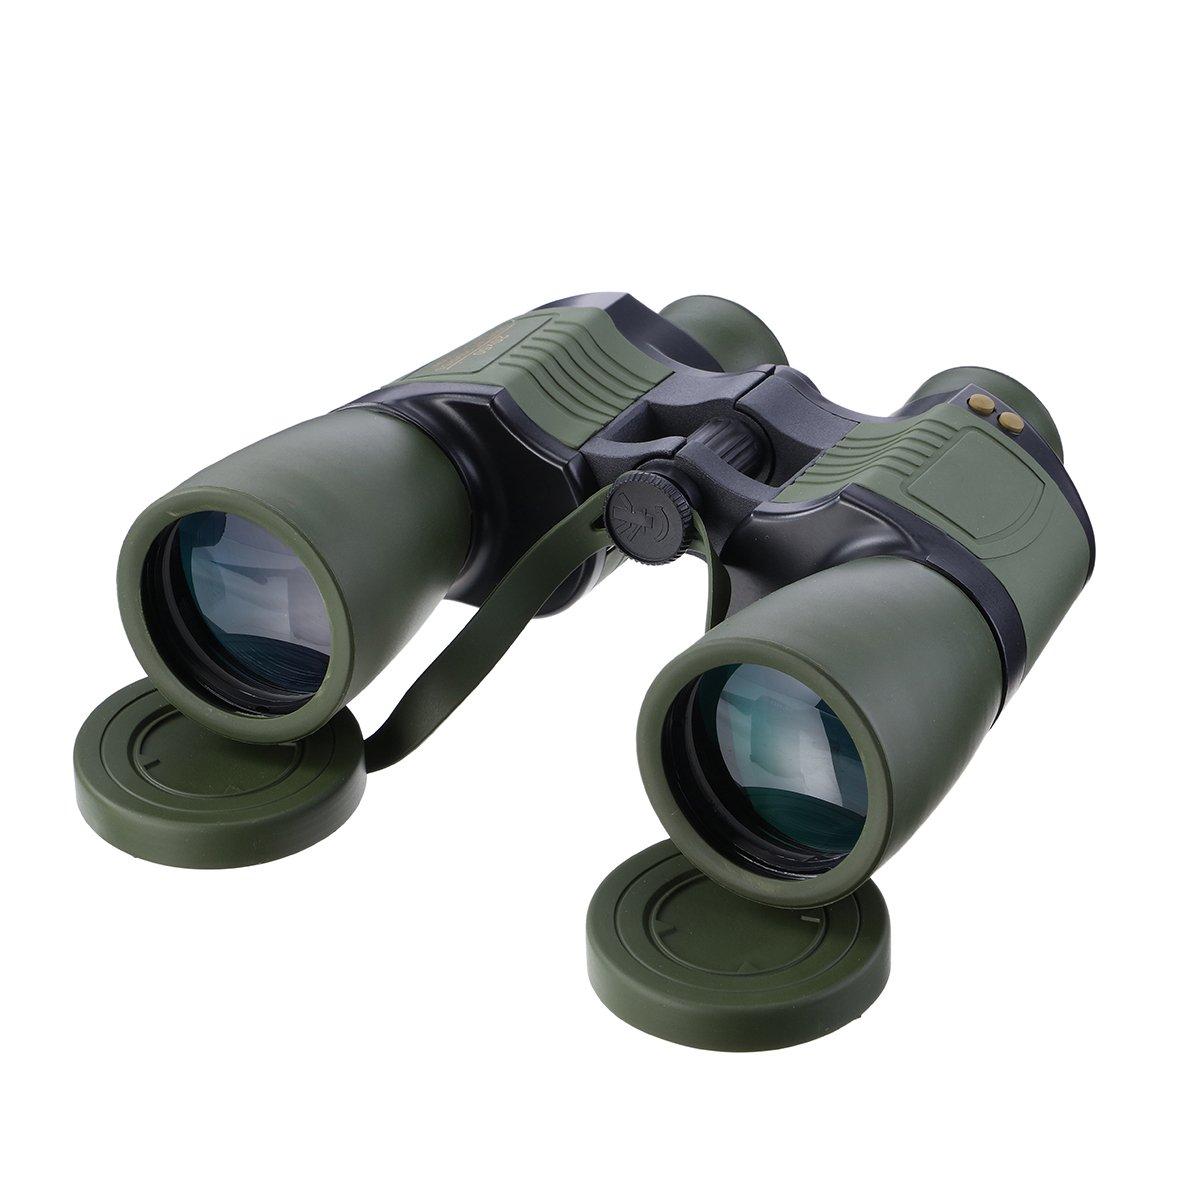 IPRee® 20x50 professionnel binoculaire tactique armée télescope militaire voyage de camping